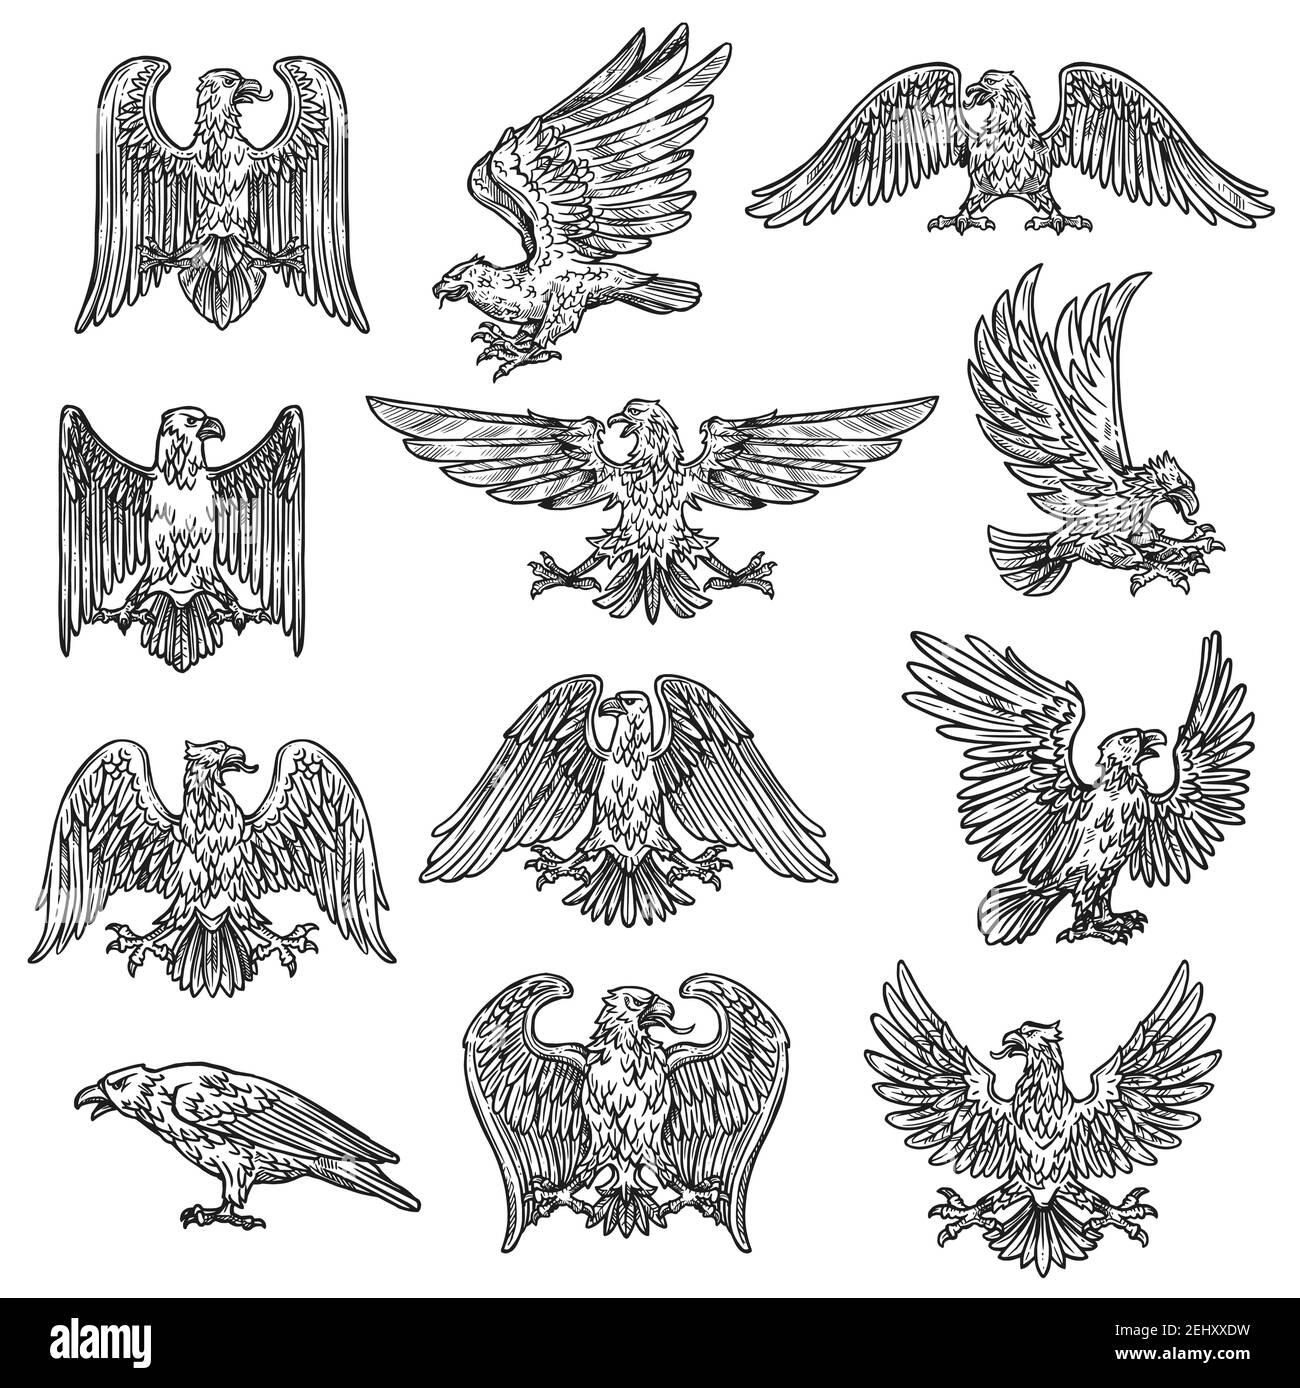 Adler herladic Skizze Ikonen. Vektor Gothic heraldry Vogel-Design, Wappen und königliche Schild Symbol oder Tattoo Adler fliegen mit ausgebreiteten Flügeln und Klaue Stock Vektor